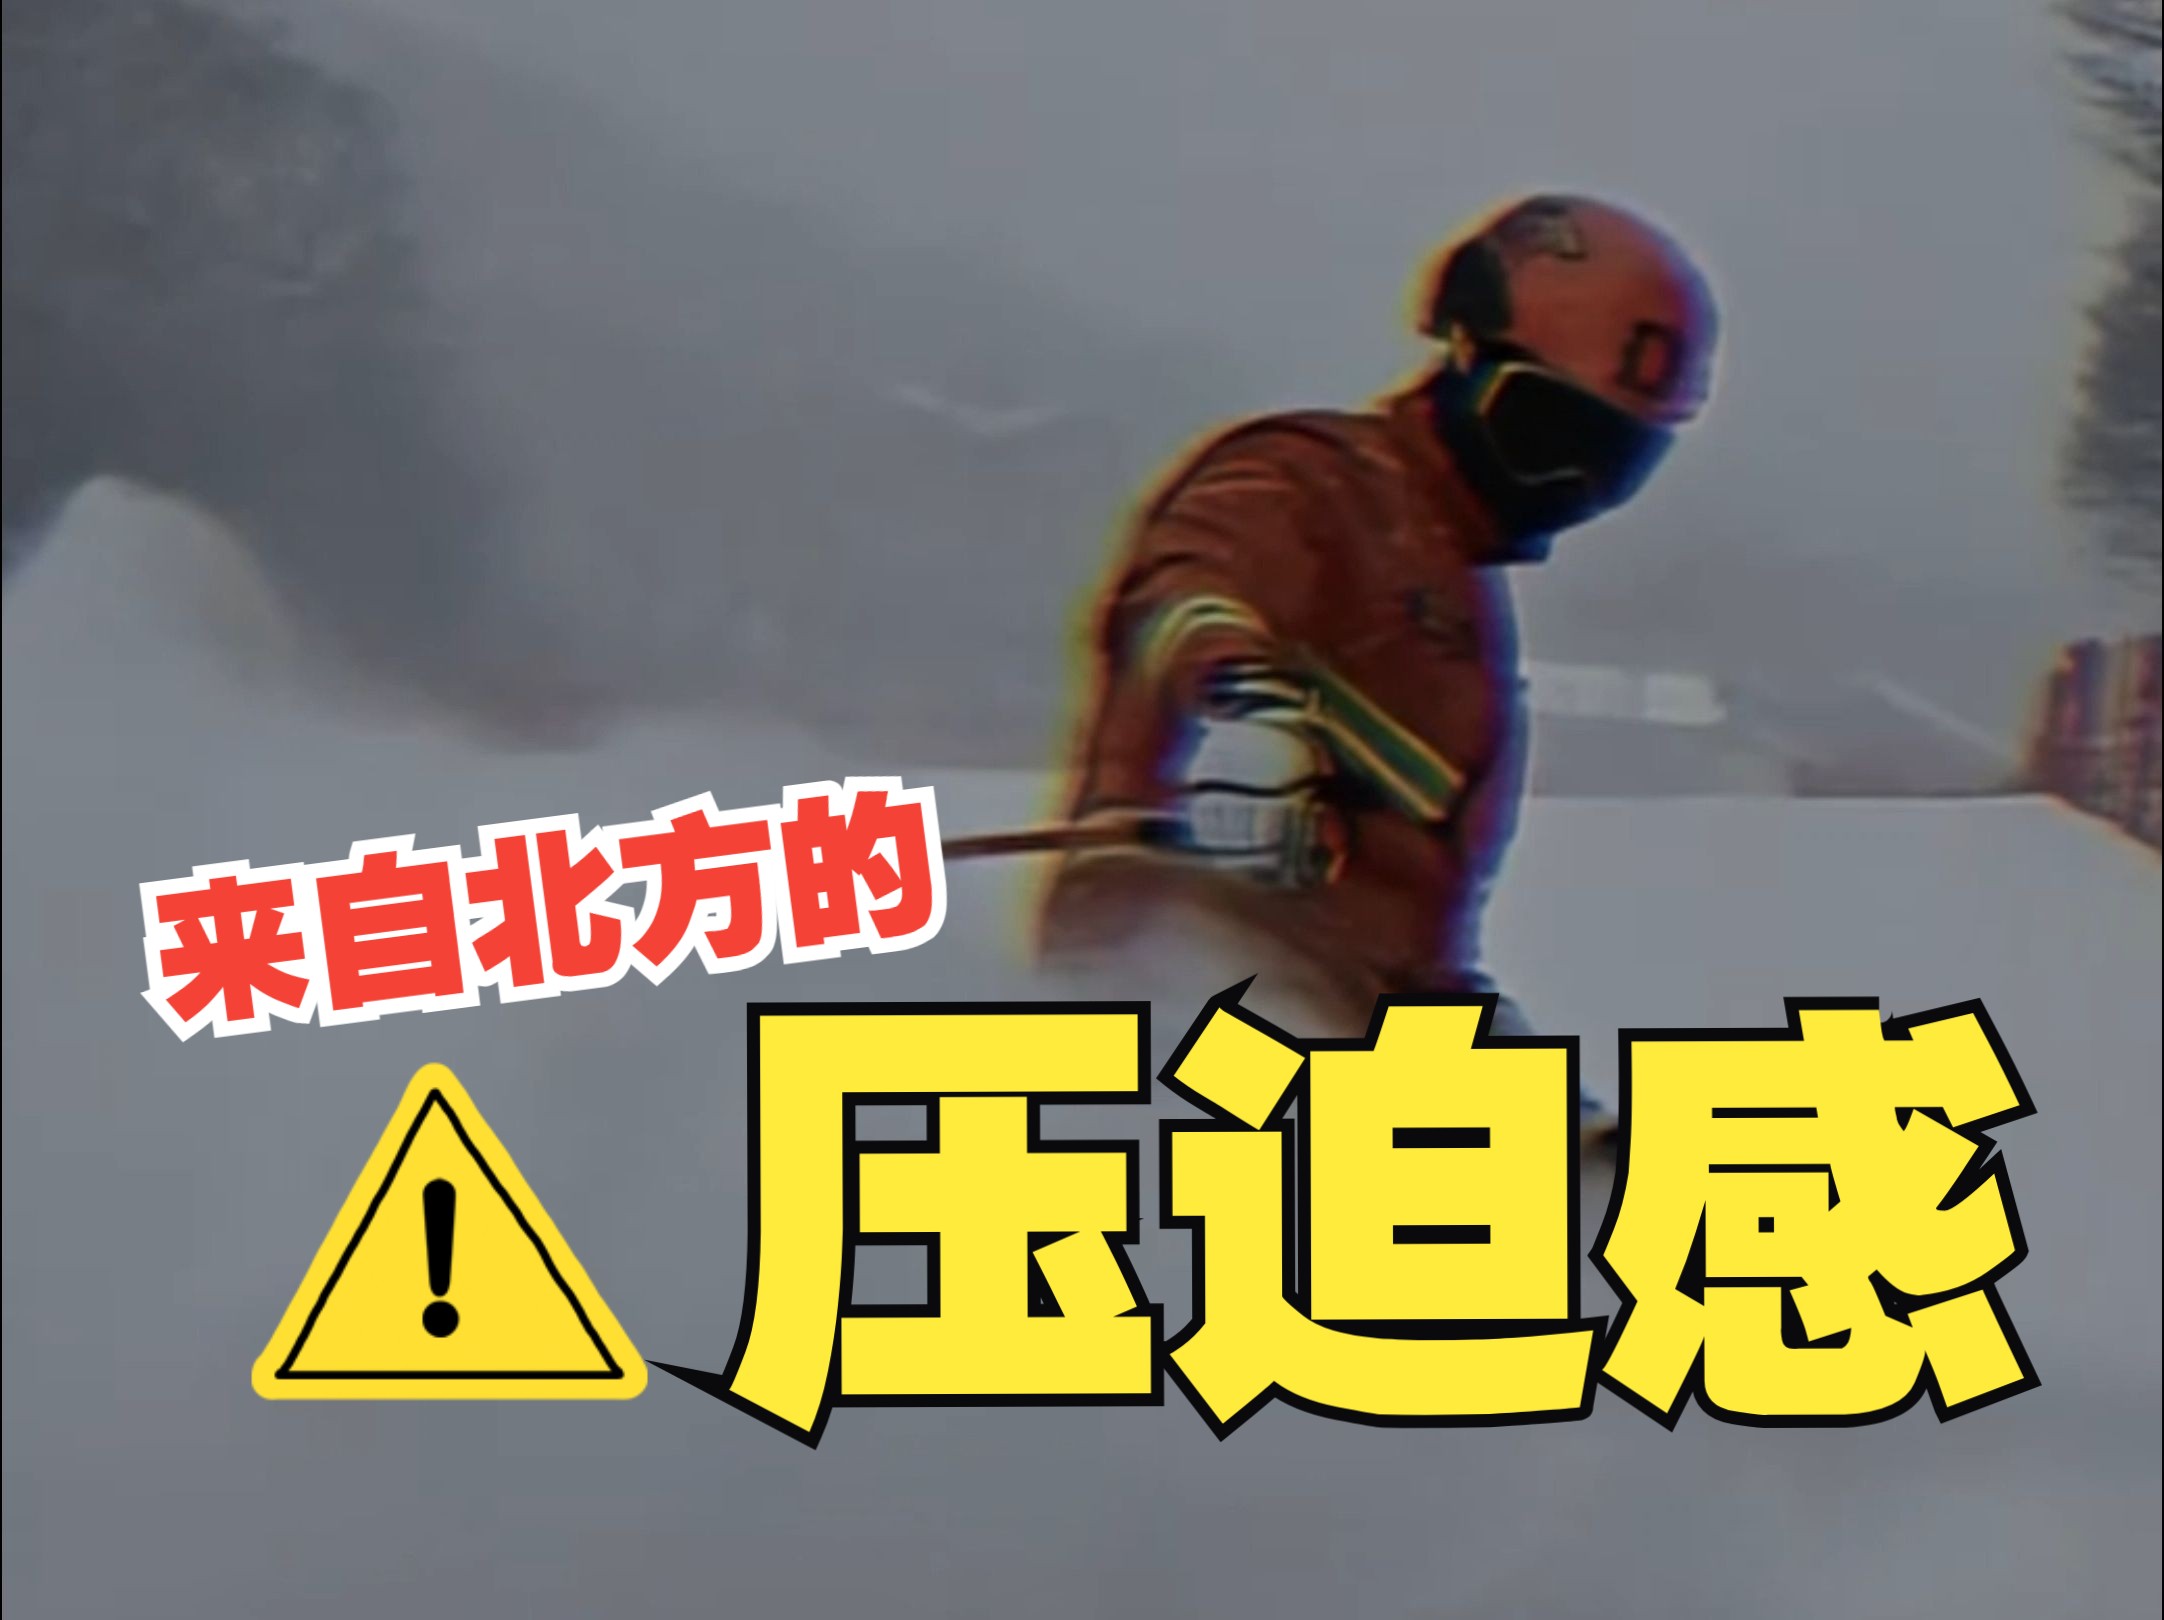 这是一条不敢艾特南方消防队的视频→